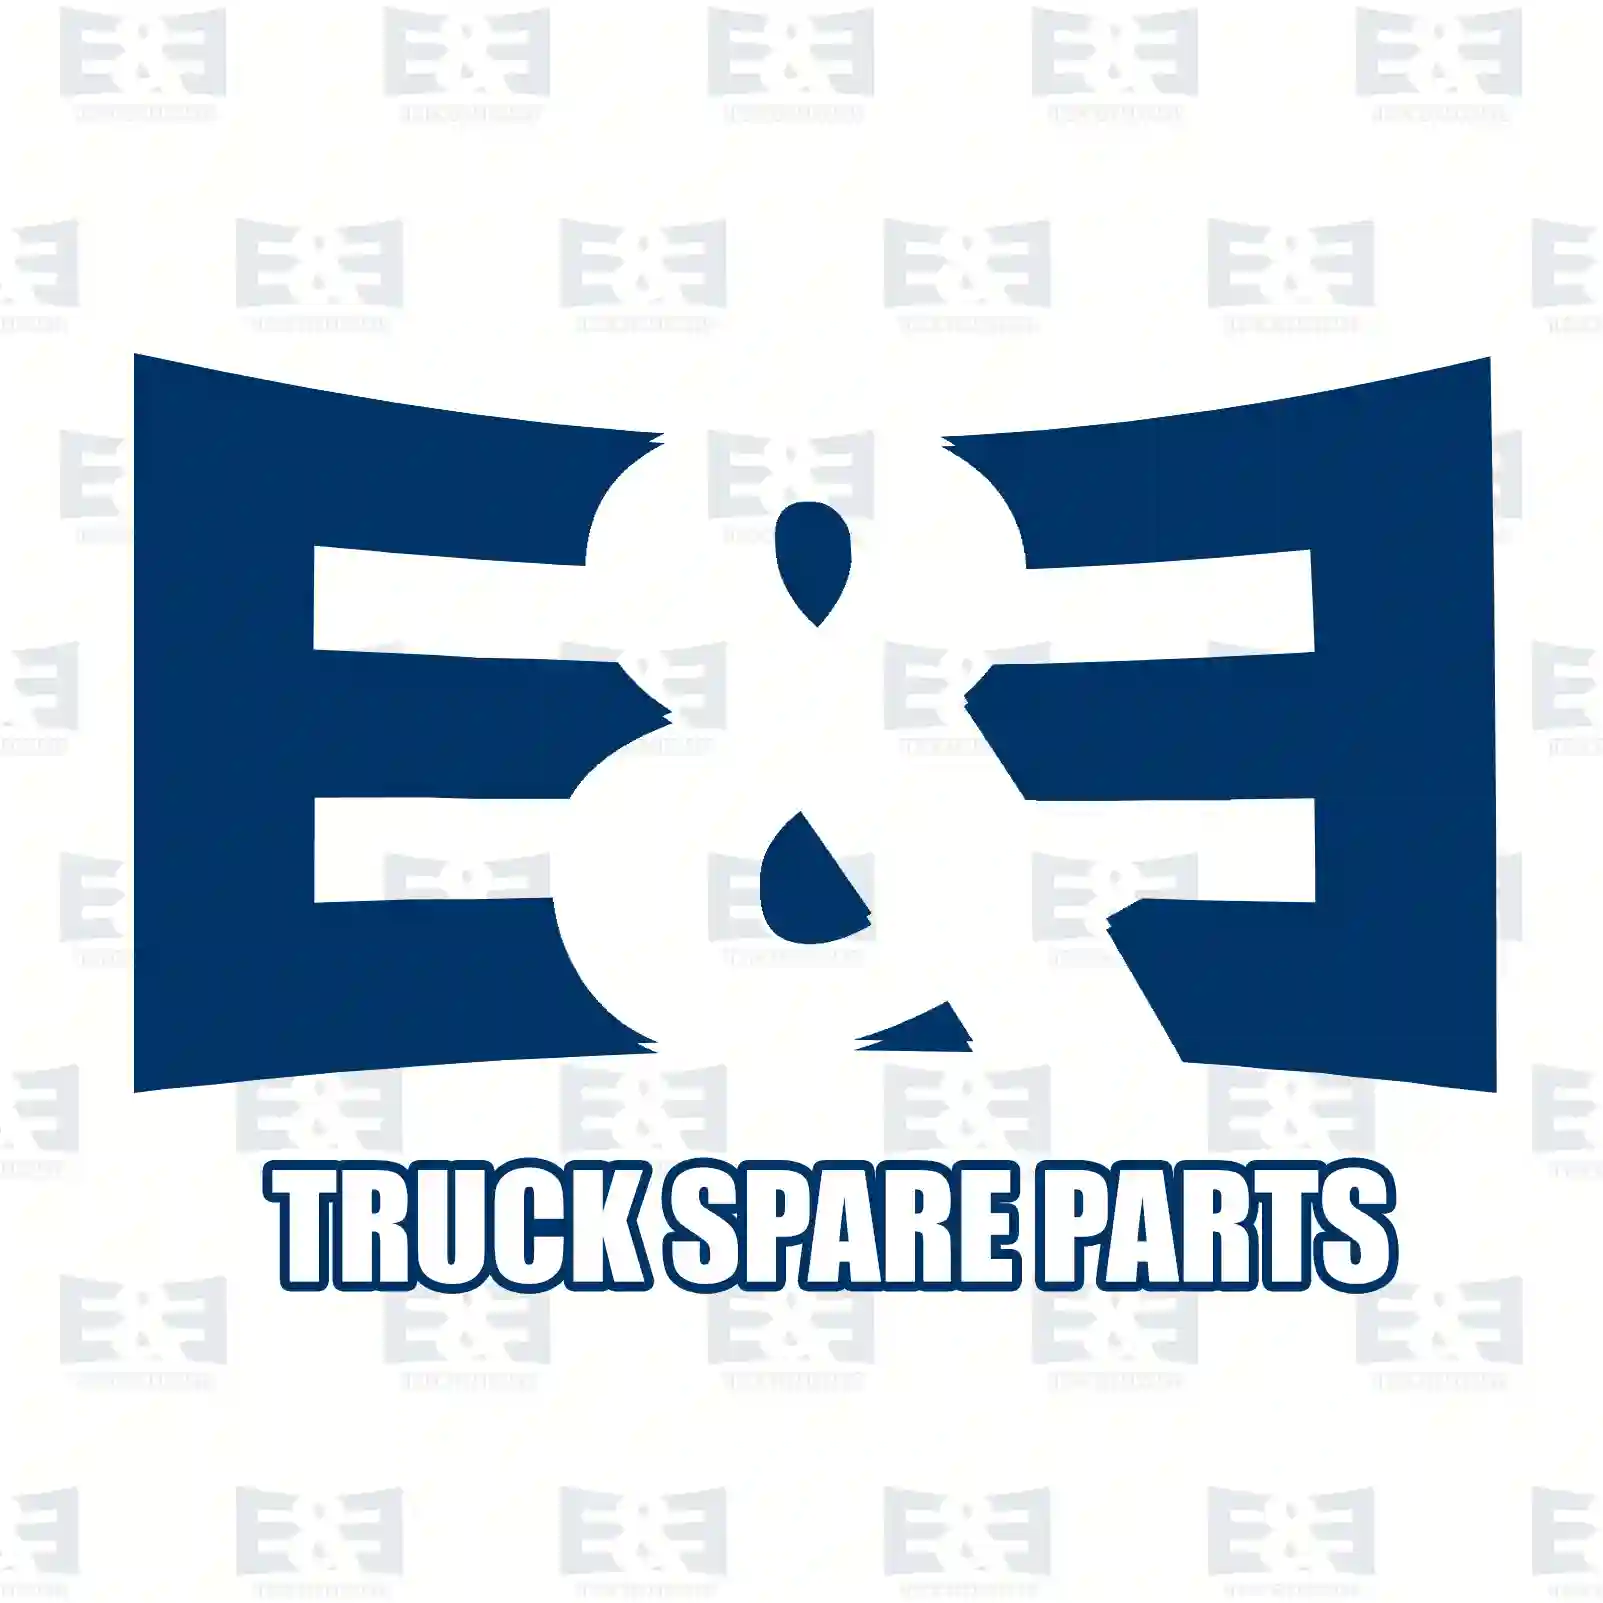 Radiator hose, 2E2203776, 1370899, 6C11-8B273-CB ||  2E2203776 E&E Truck Spare Parts | Truck Spare Parts, Auotomotive Spare Parts Radiator hose, 2E2203776, 1370899, 6C11-8B273-CB ||  2E2203776 E&E Truck Spare Parts | Truck Spare Parts, Auotomotive Spare Parts